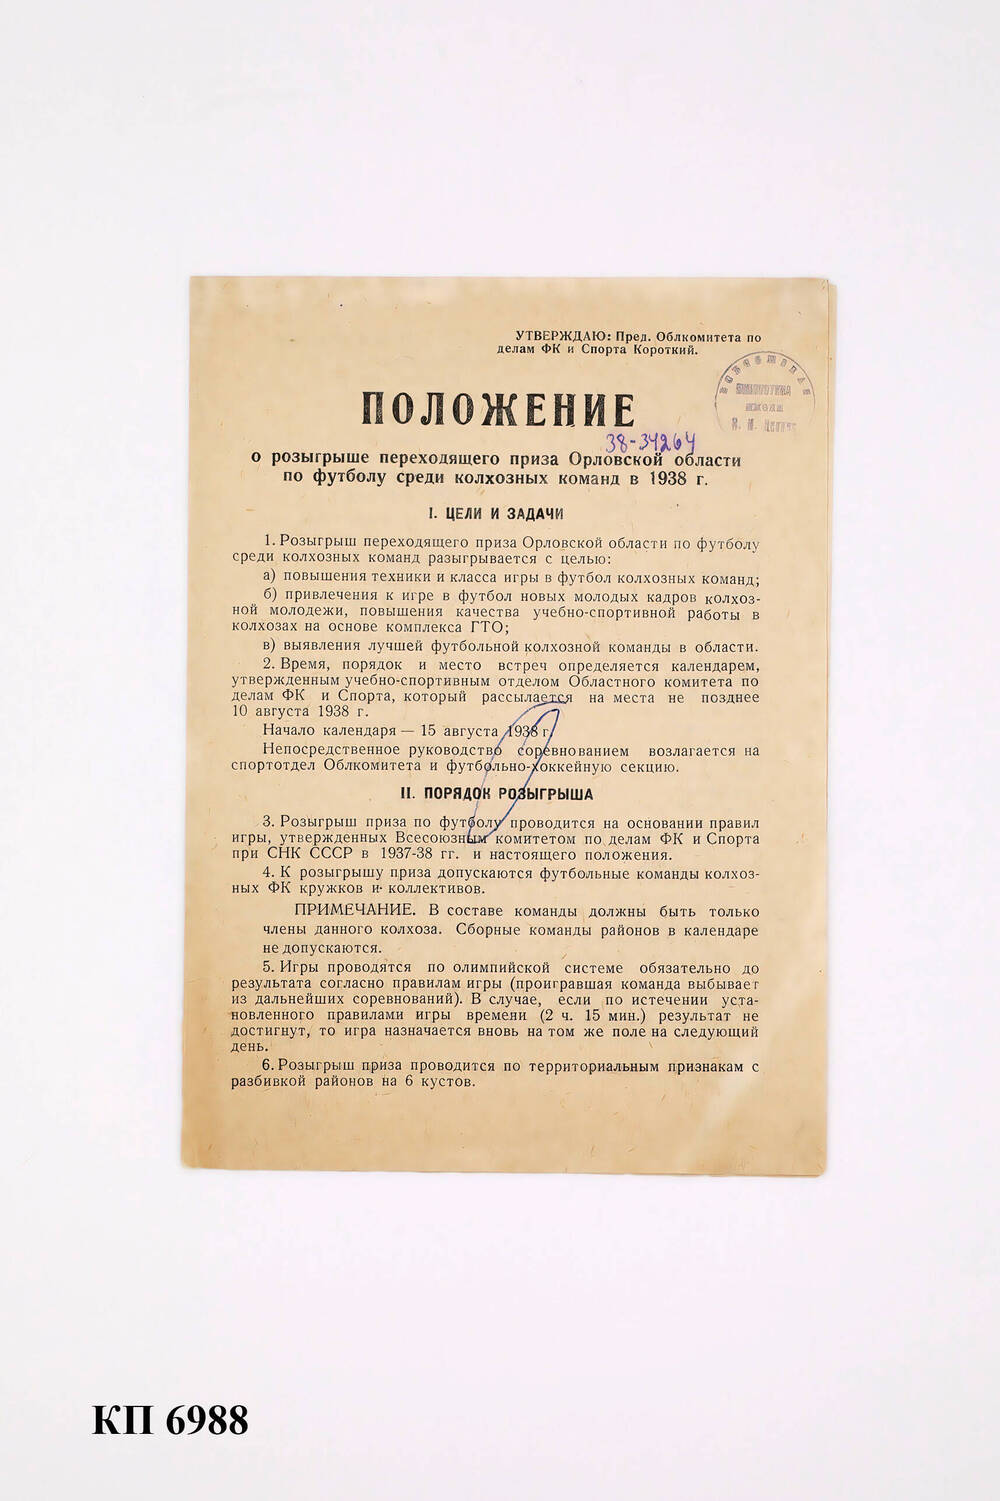 Положение о розыгрыше переходящего приза Орловской области по футболу среди колхозных команд в 1938 г.